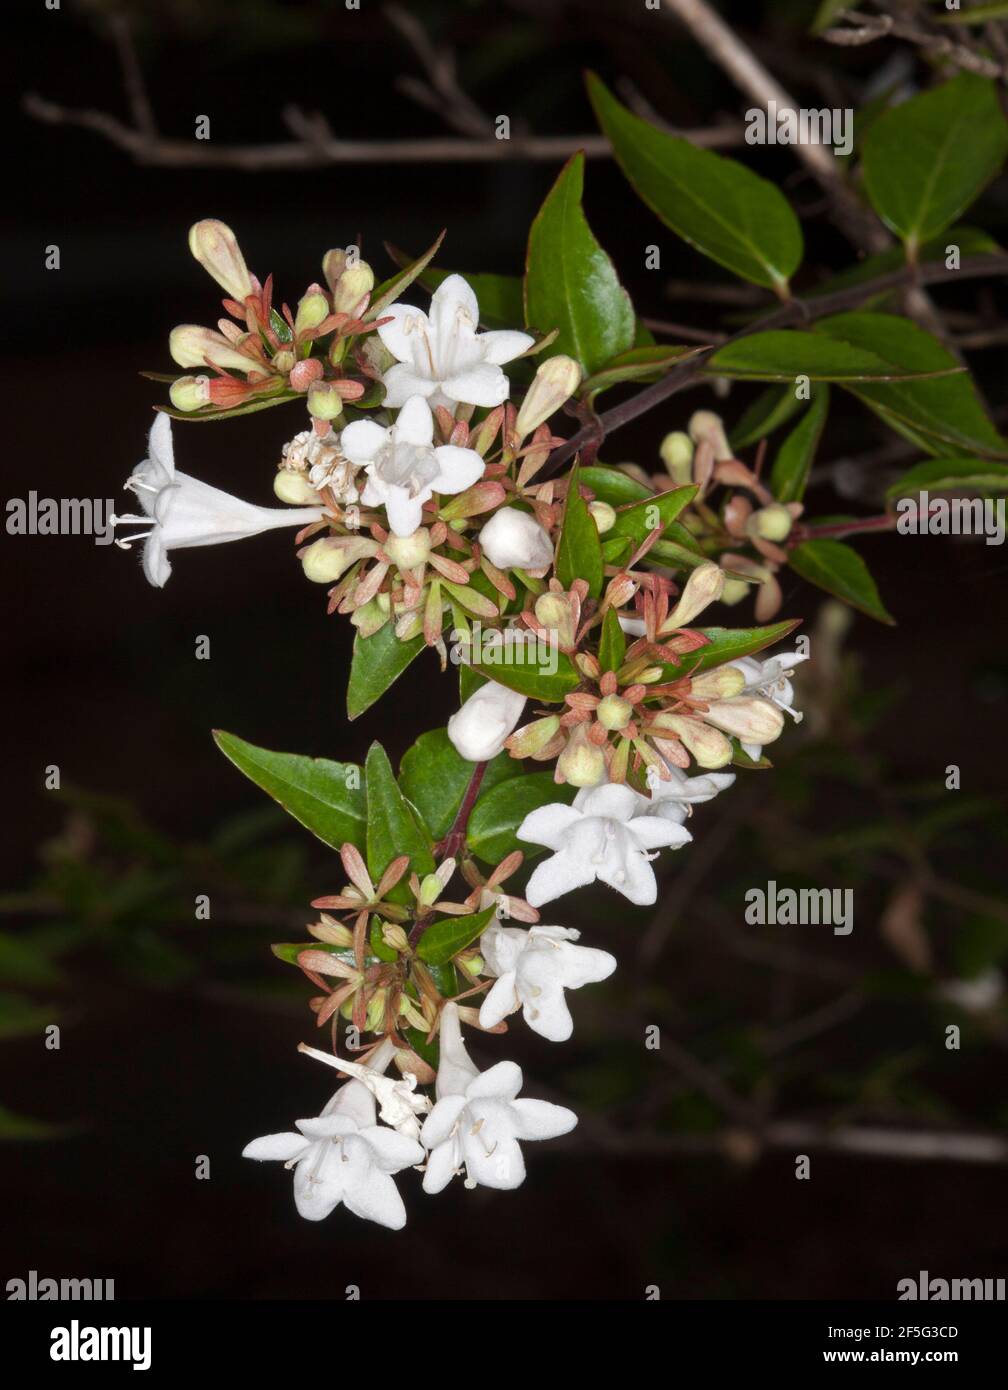 Ensemble de fleurs blanches parfumées, bourgeons et feuilles vertes  d'arbustes à feuilles caduques, Abelia x grandiflora sur fond sombre Photo  Stock - Alamy